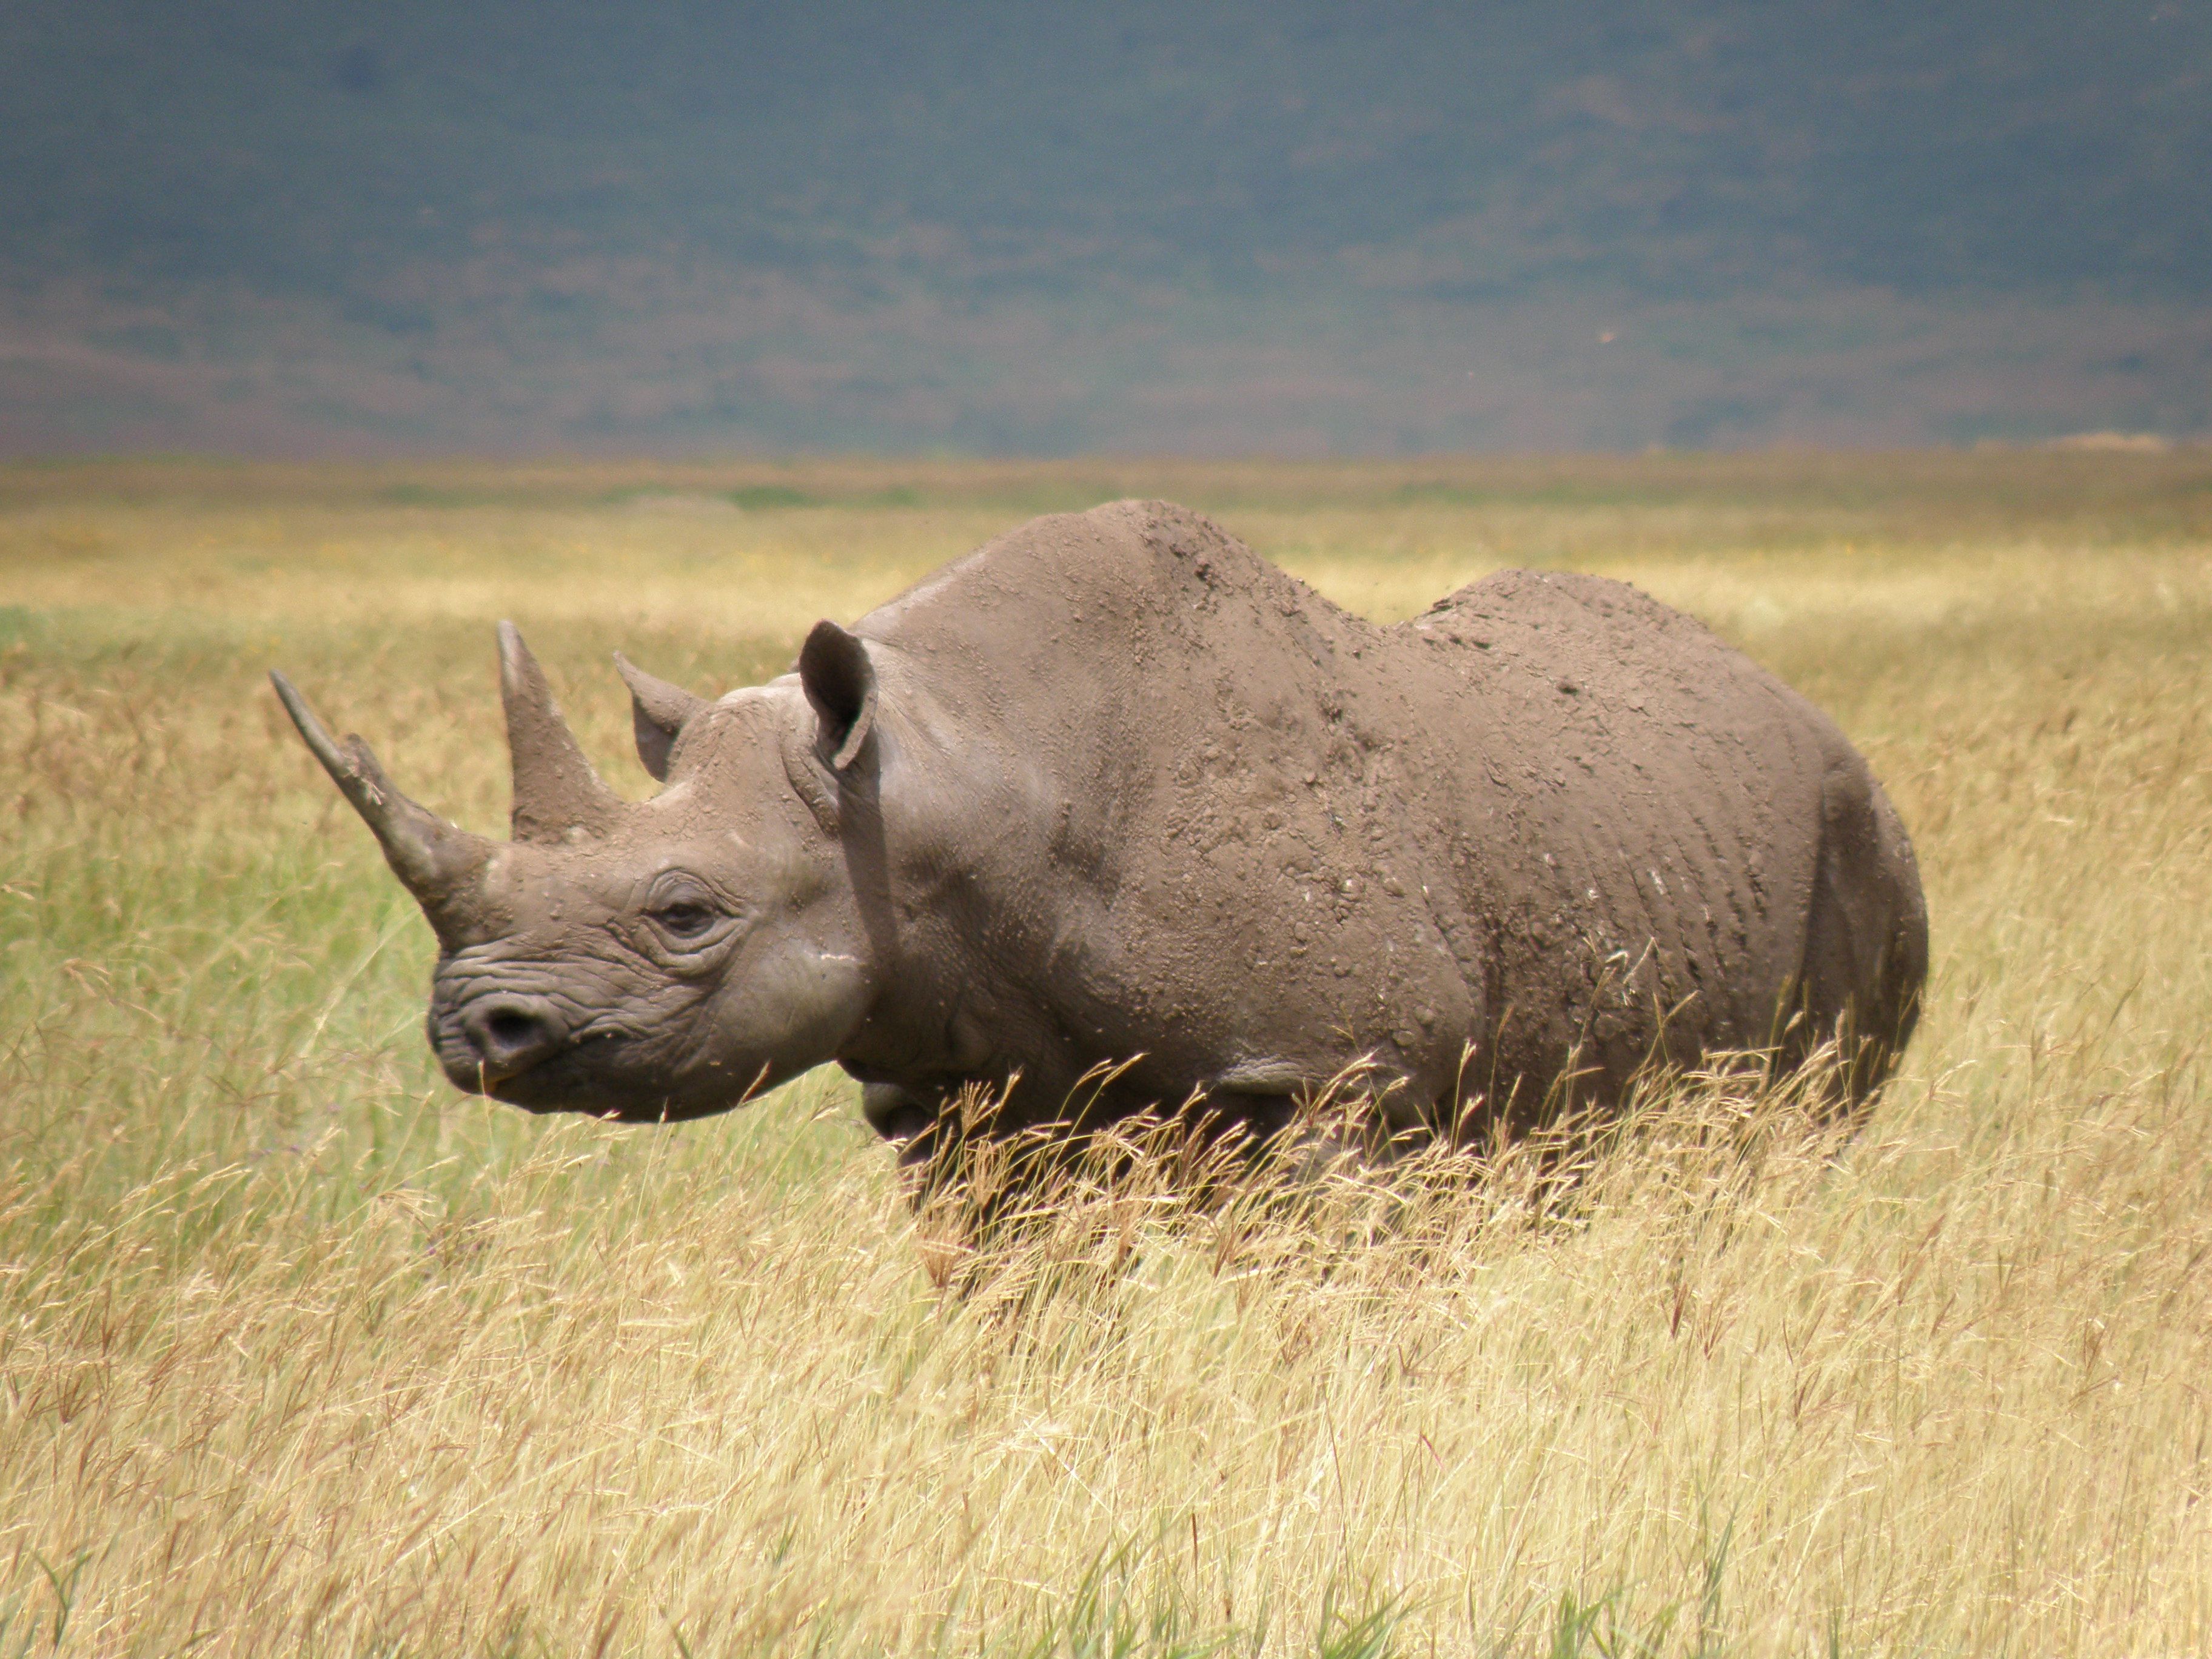 Western black rhino declared extinct | CNN